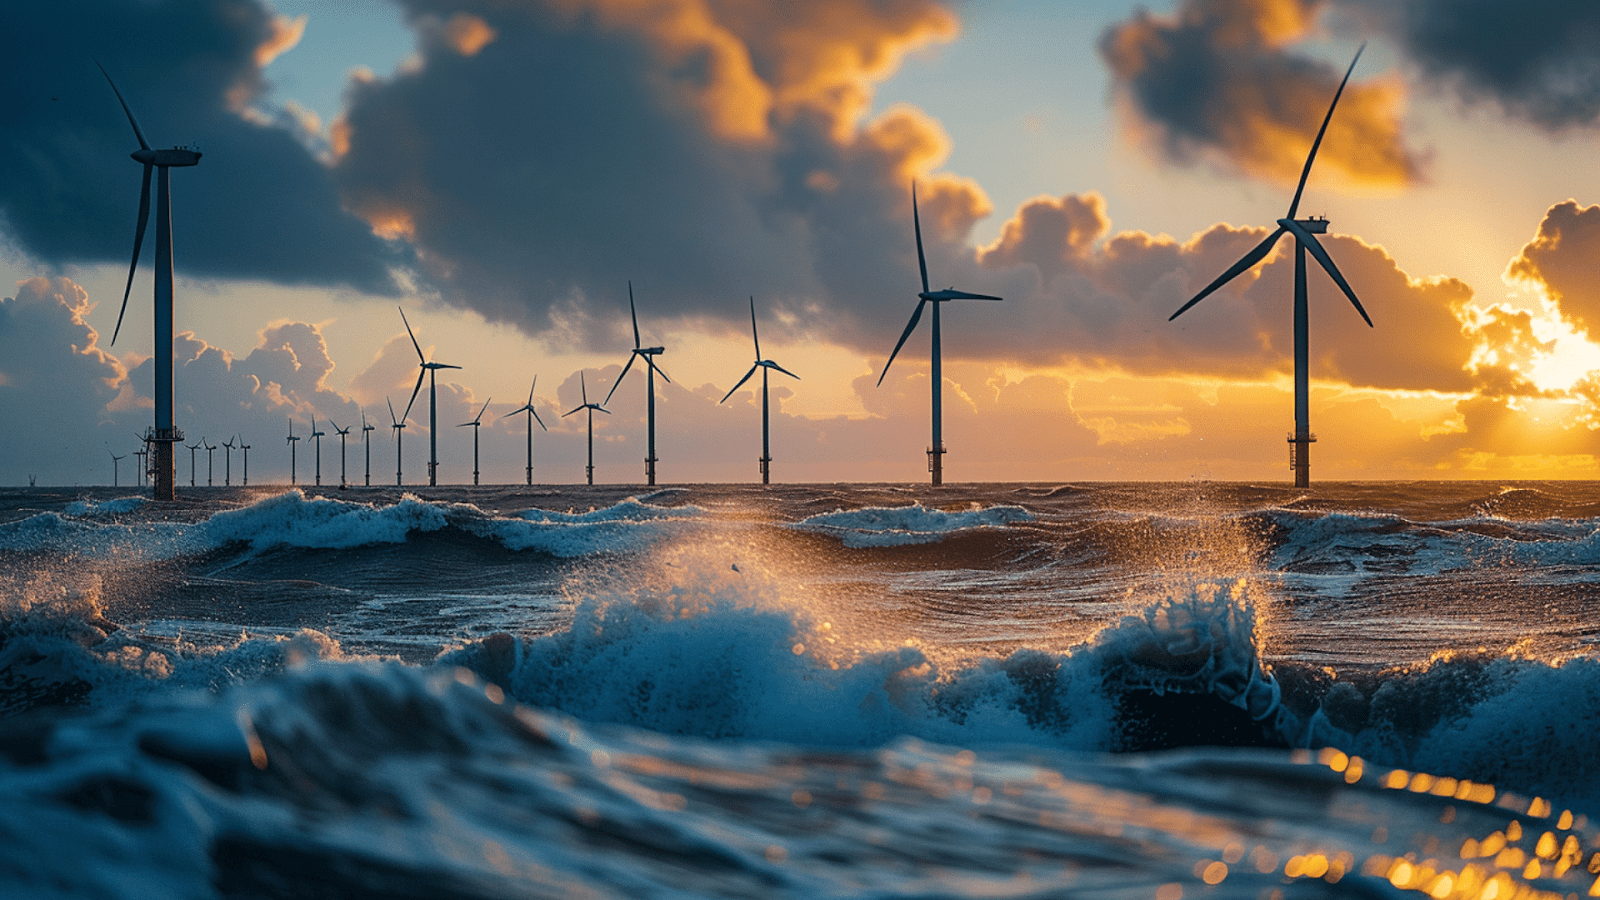 Wind farms in the North Sea